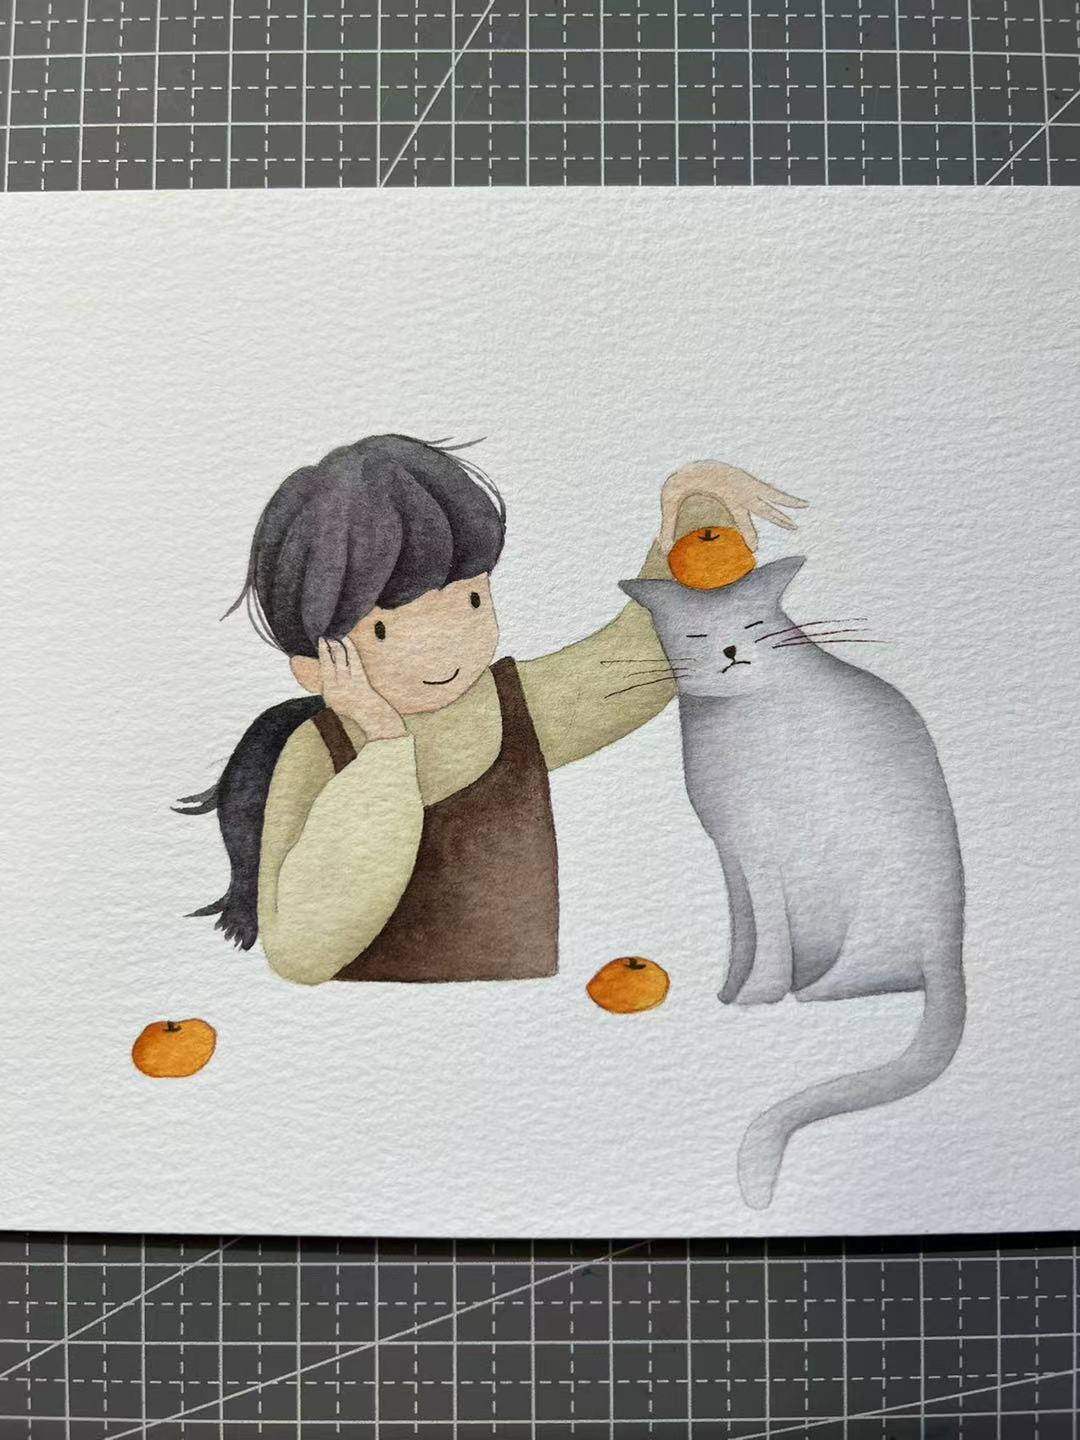 【三猫手绘】水彩画作品《橘子猫》1072装饰画